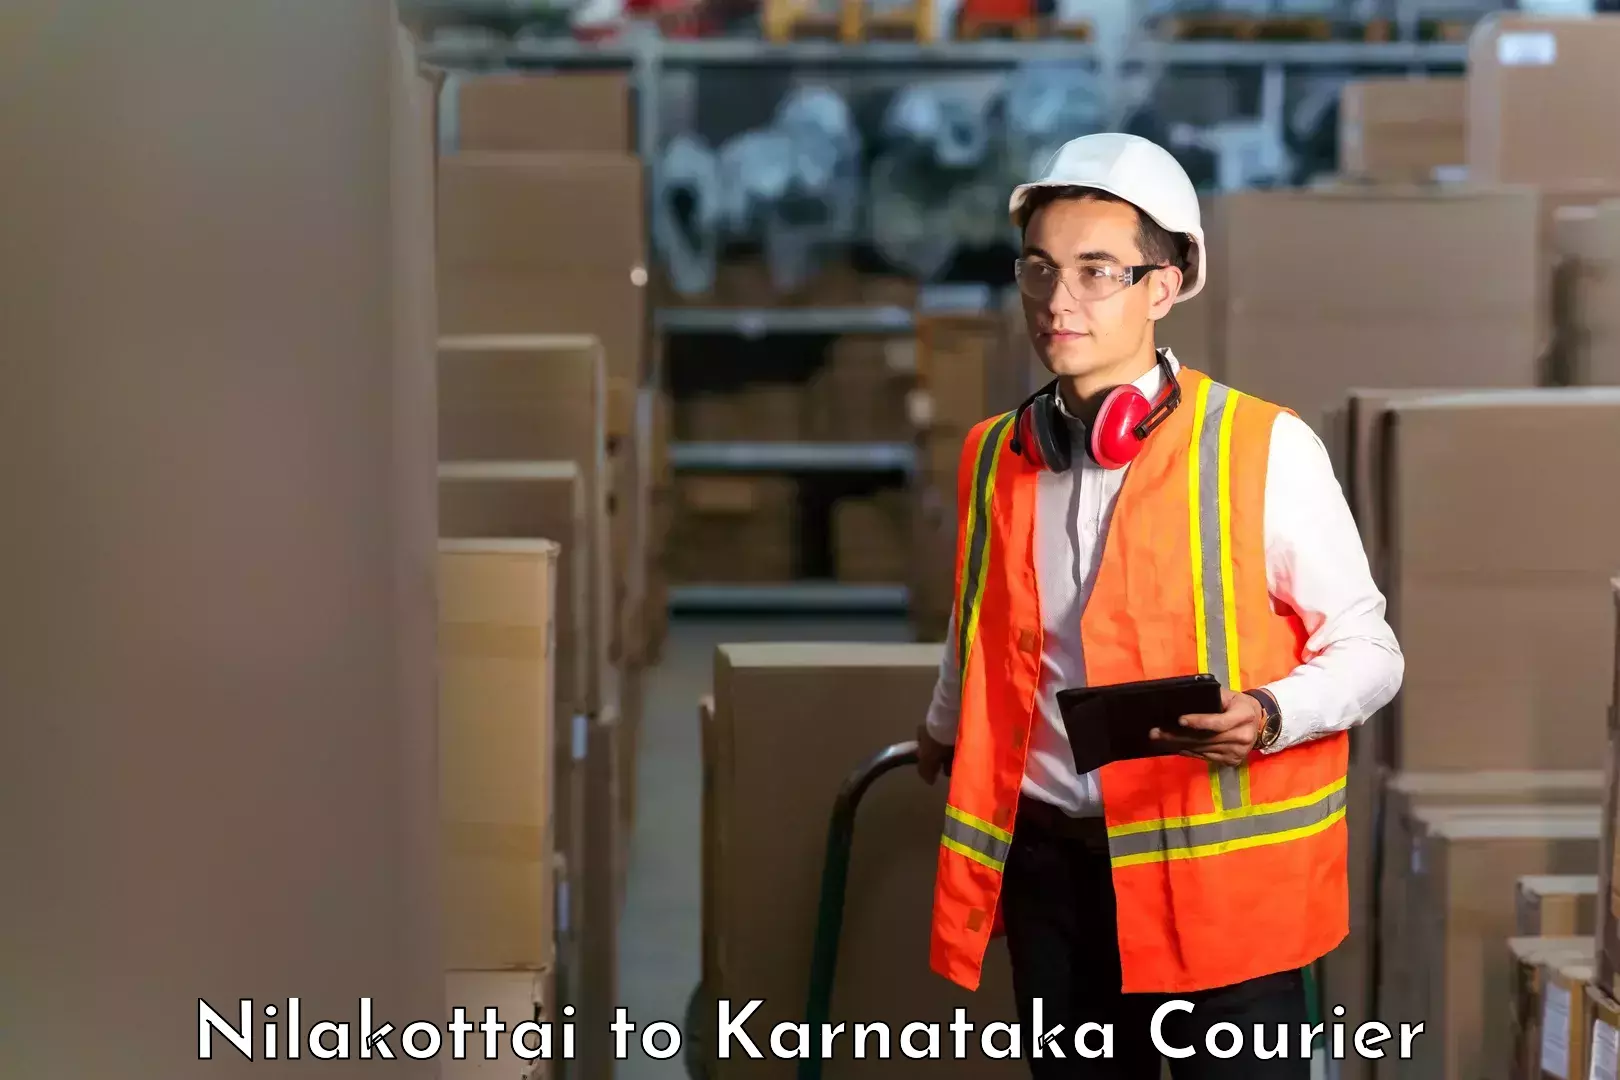 Custom courier packaging Nilakottai to Karnataka